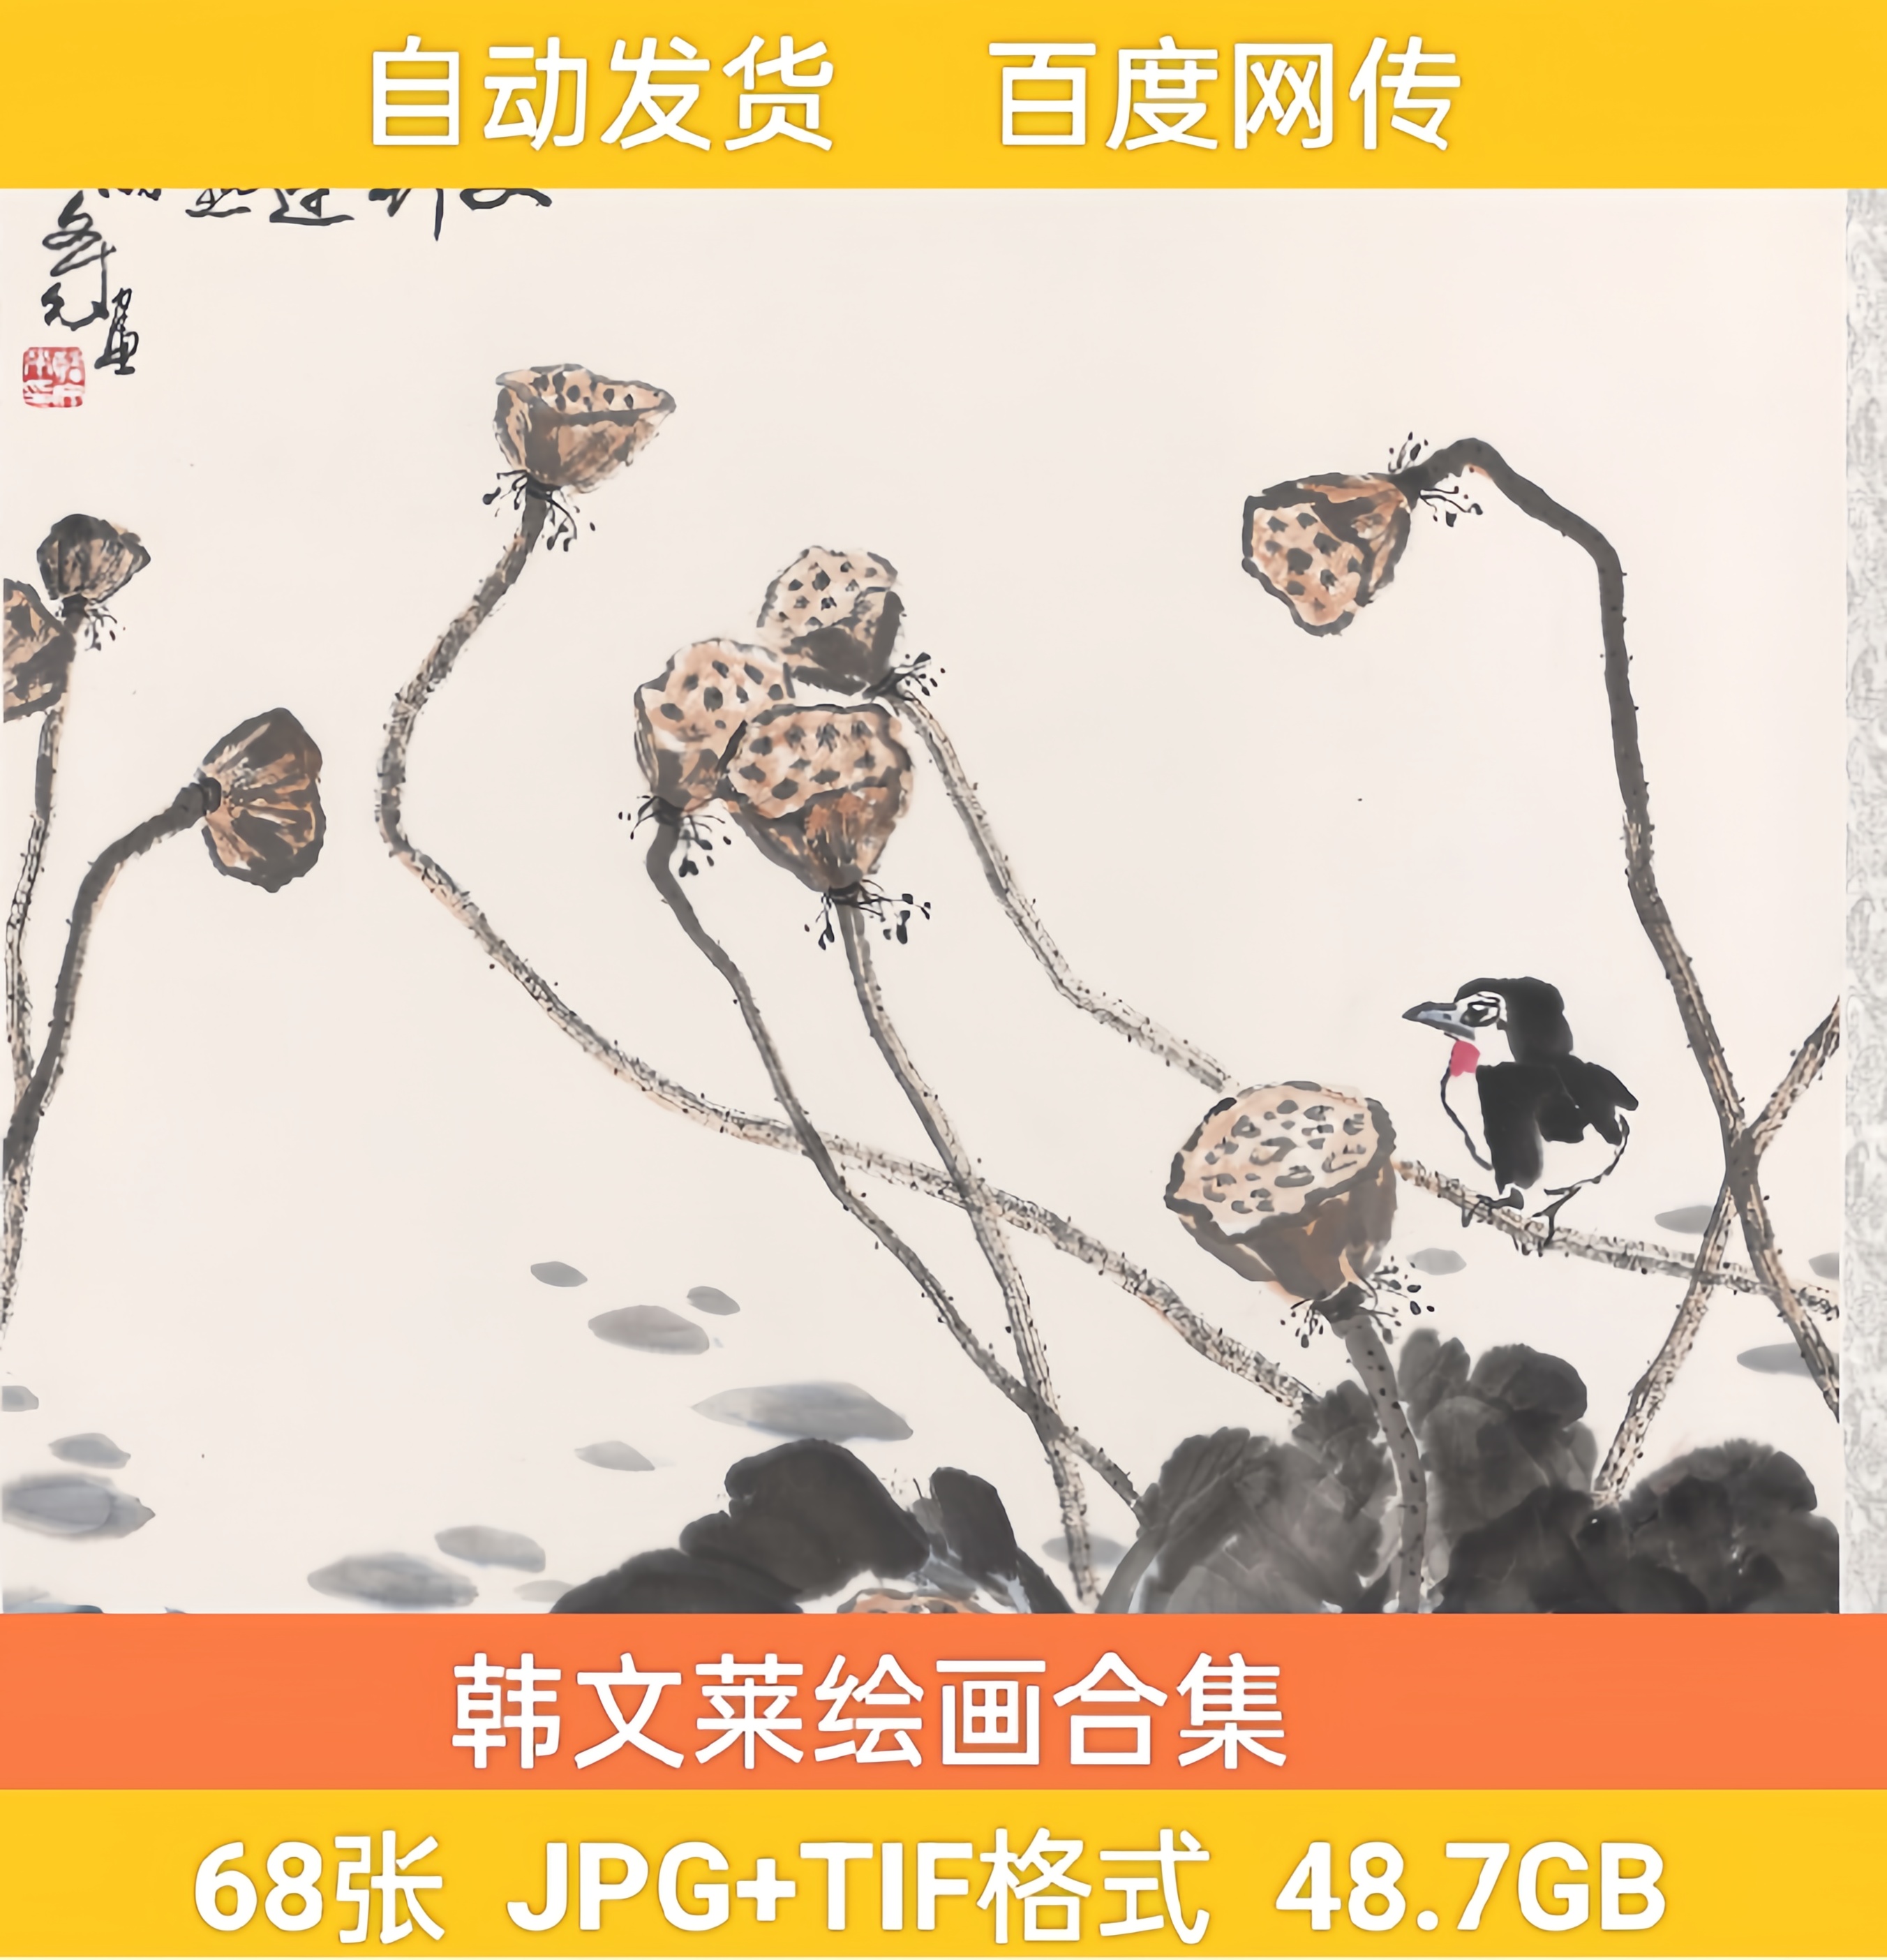 韩文莱绘画合集  高清电子国画水墨写意山水花鸟人物素材合集68幅